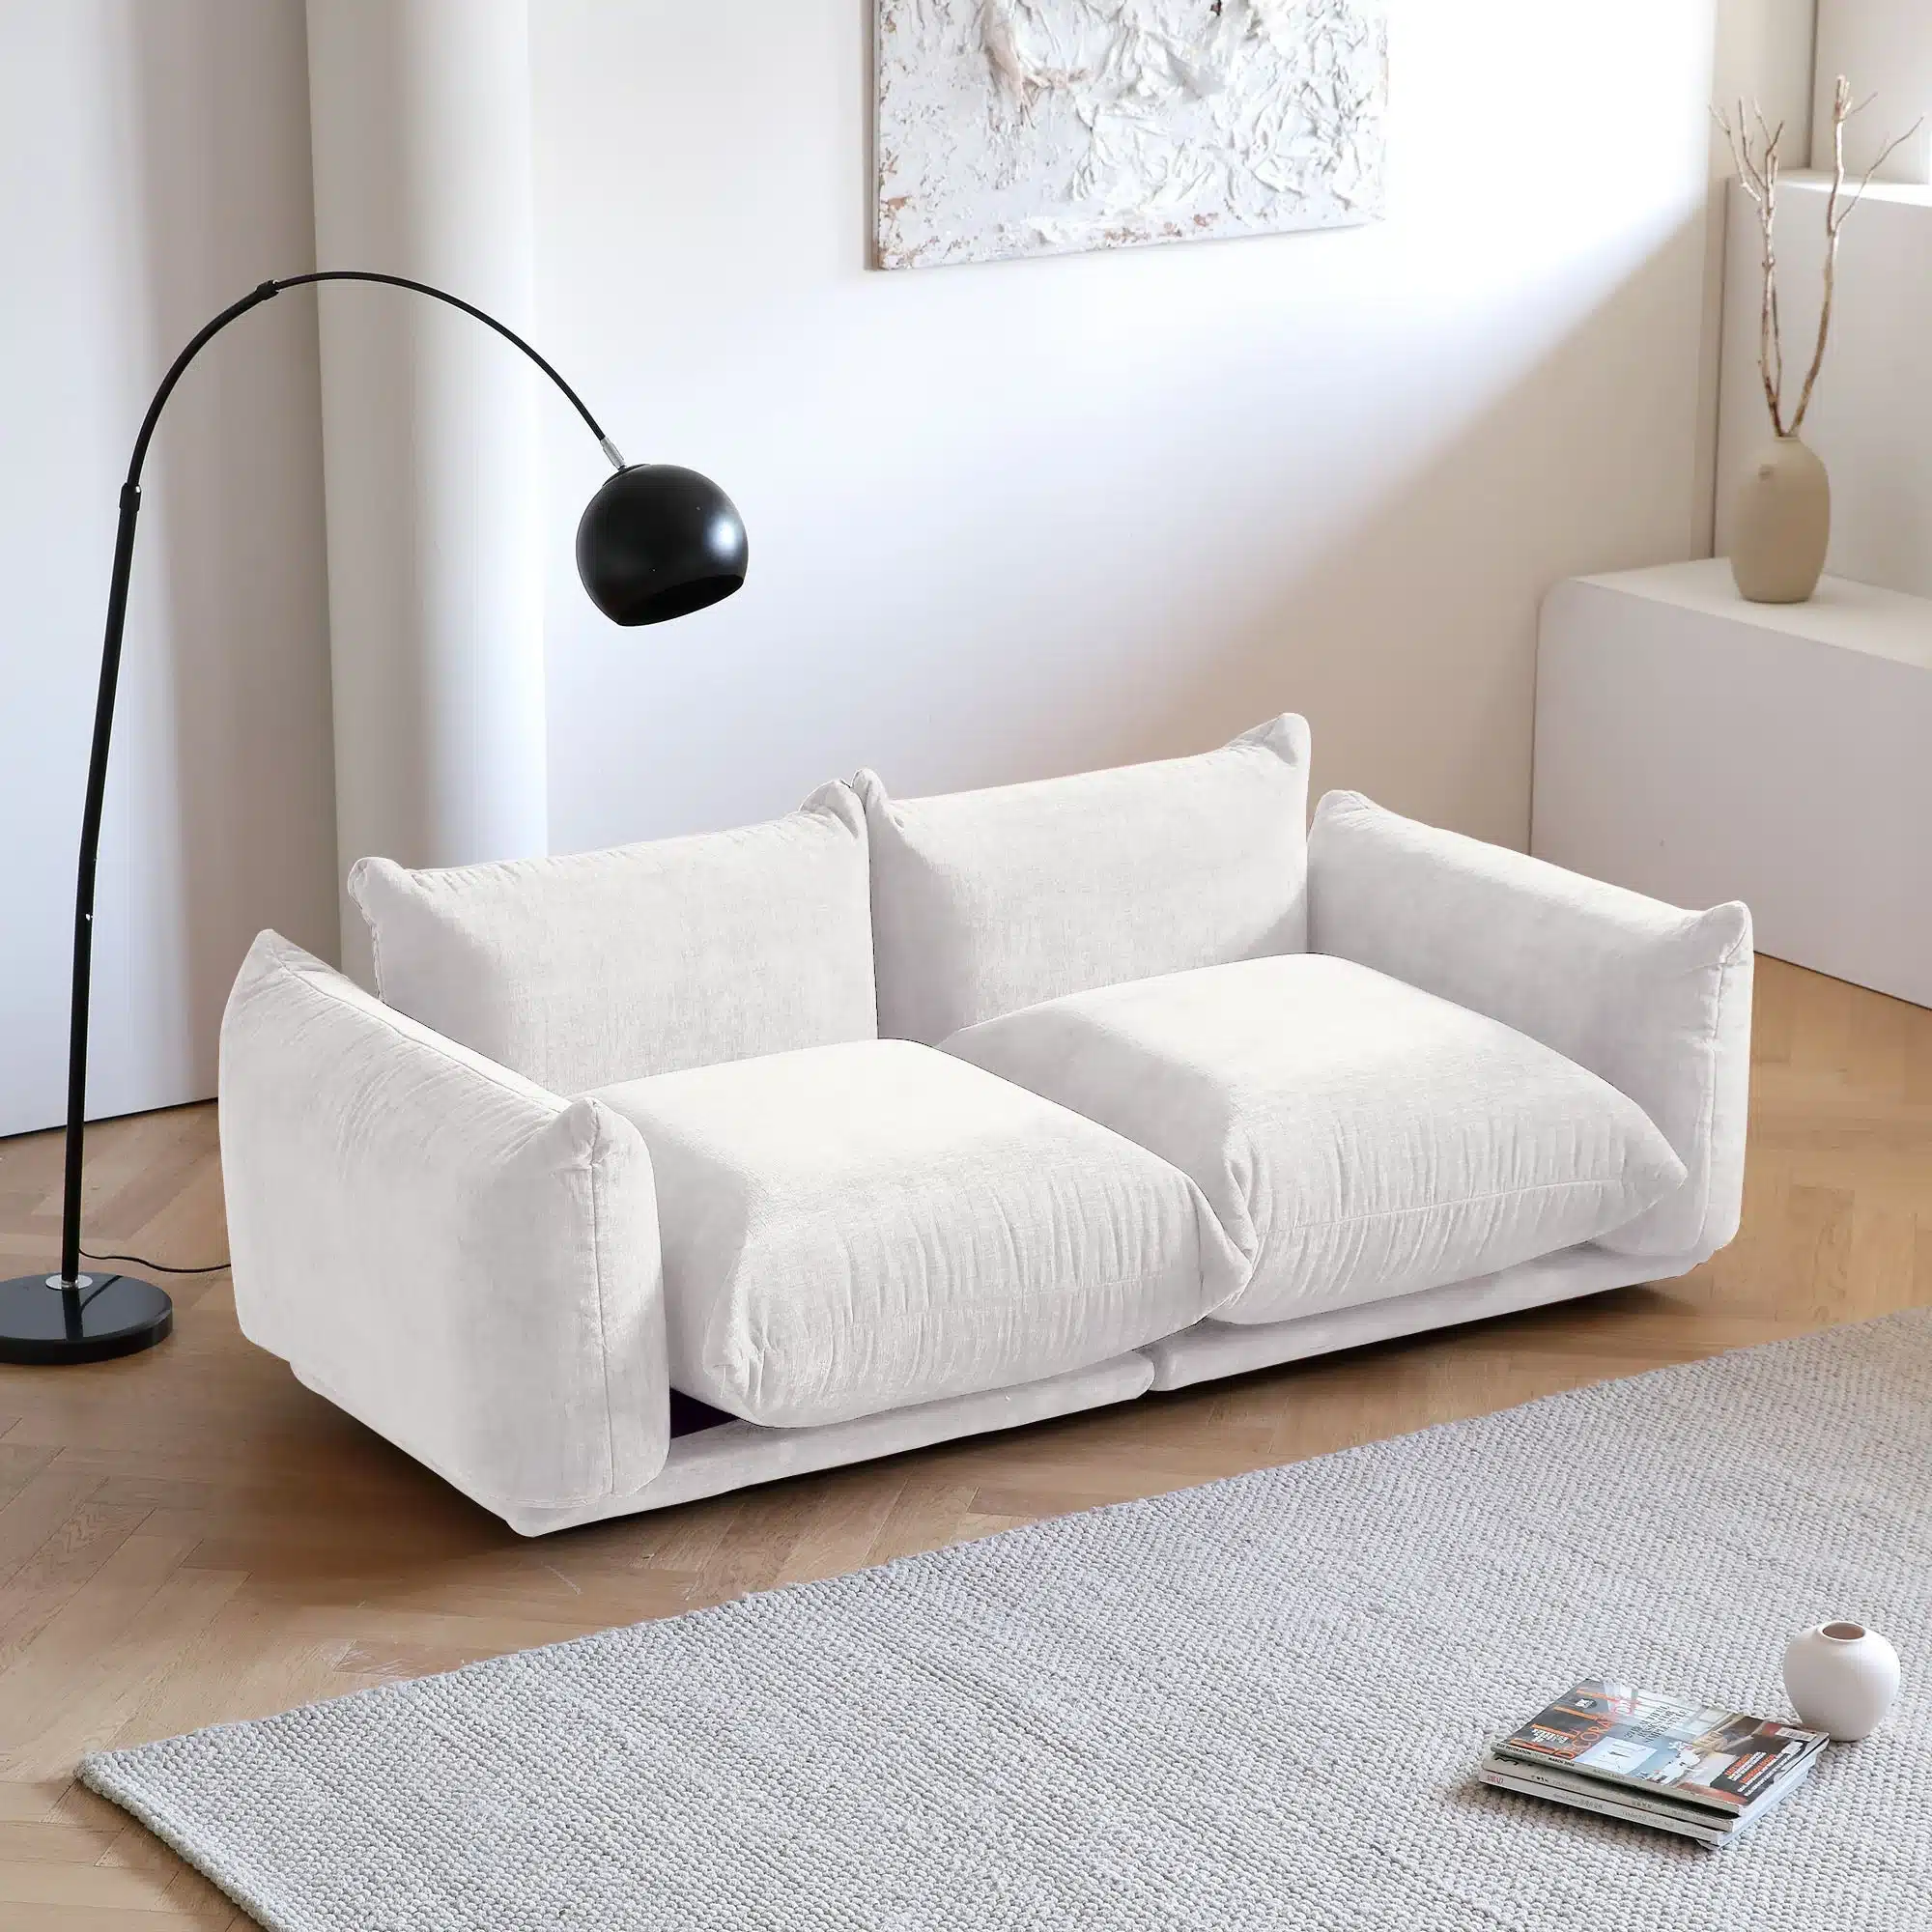 Marenco Sofa Replica 2 | Sohnne® Official Store